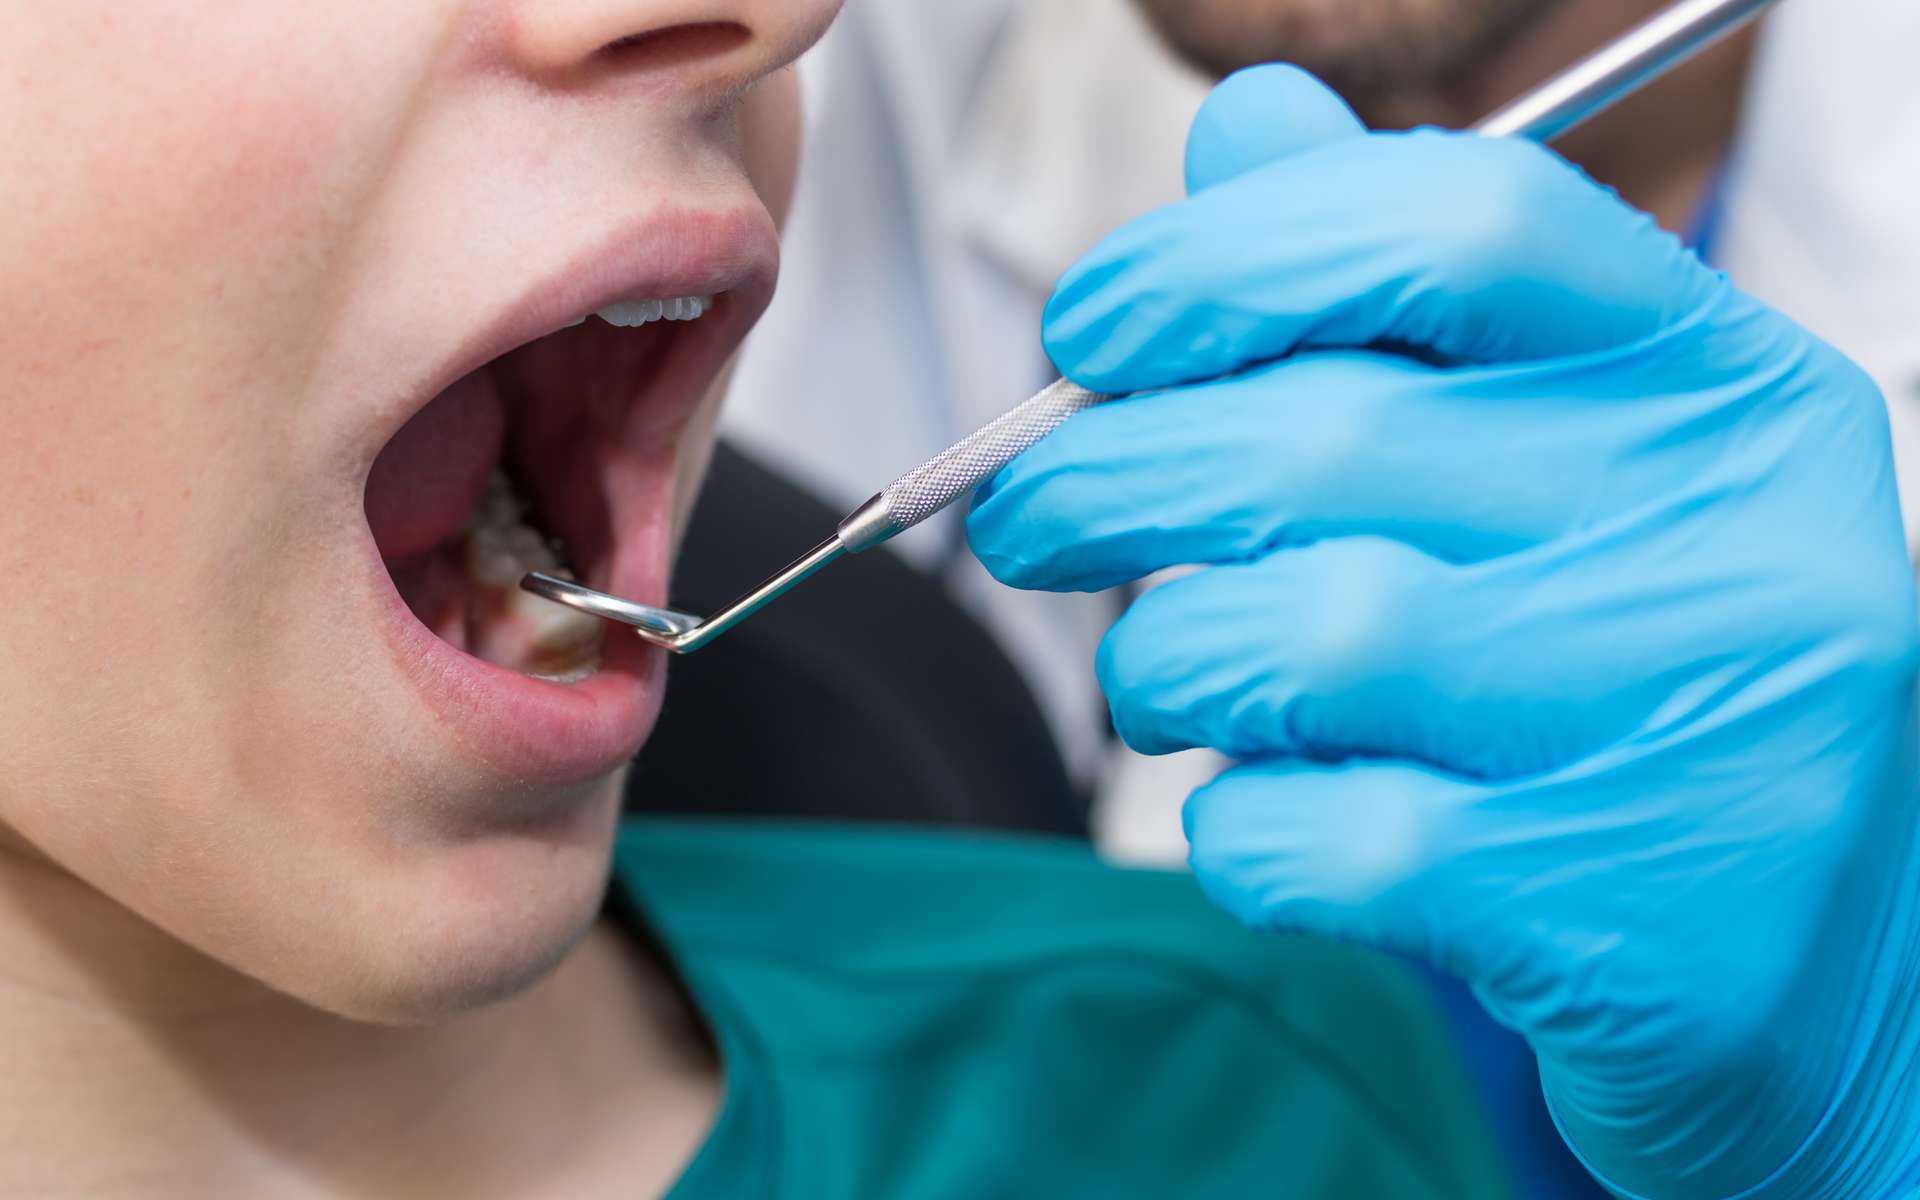 Le chirurgien-dentiste ausculte la bouche des patients que ce soit pour soigner ou prévenir des maladies dentaires.